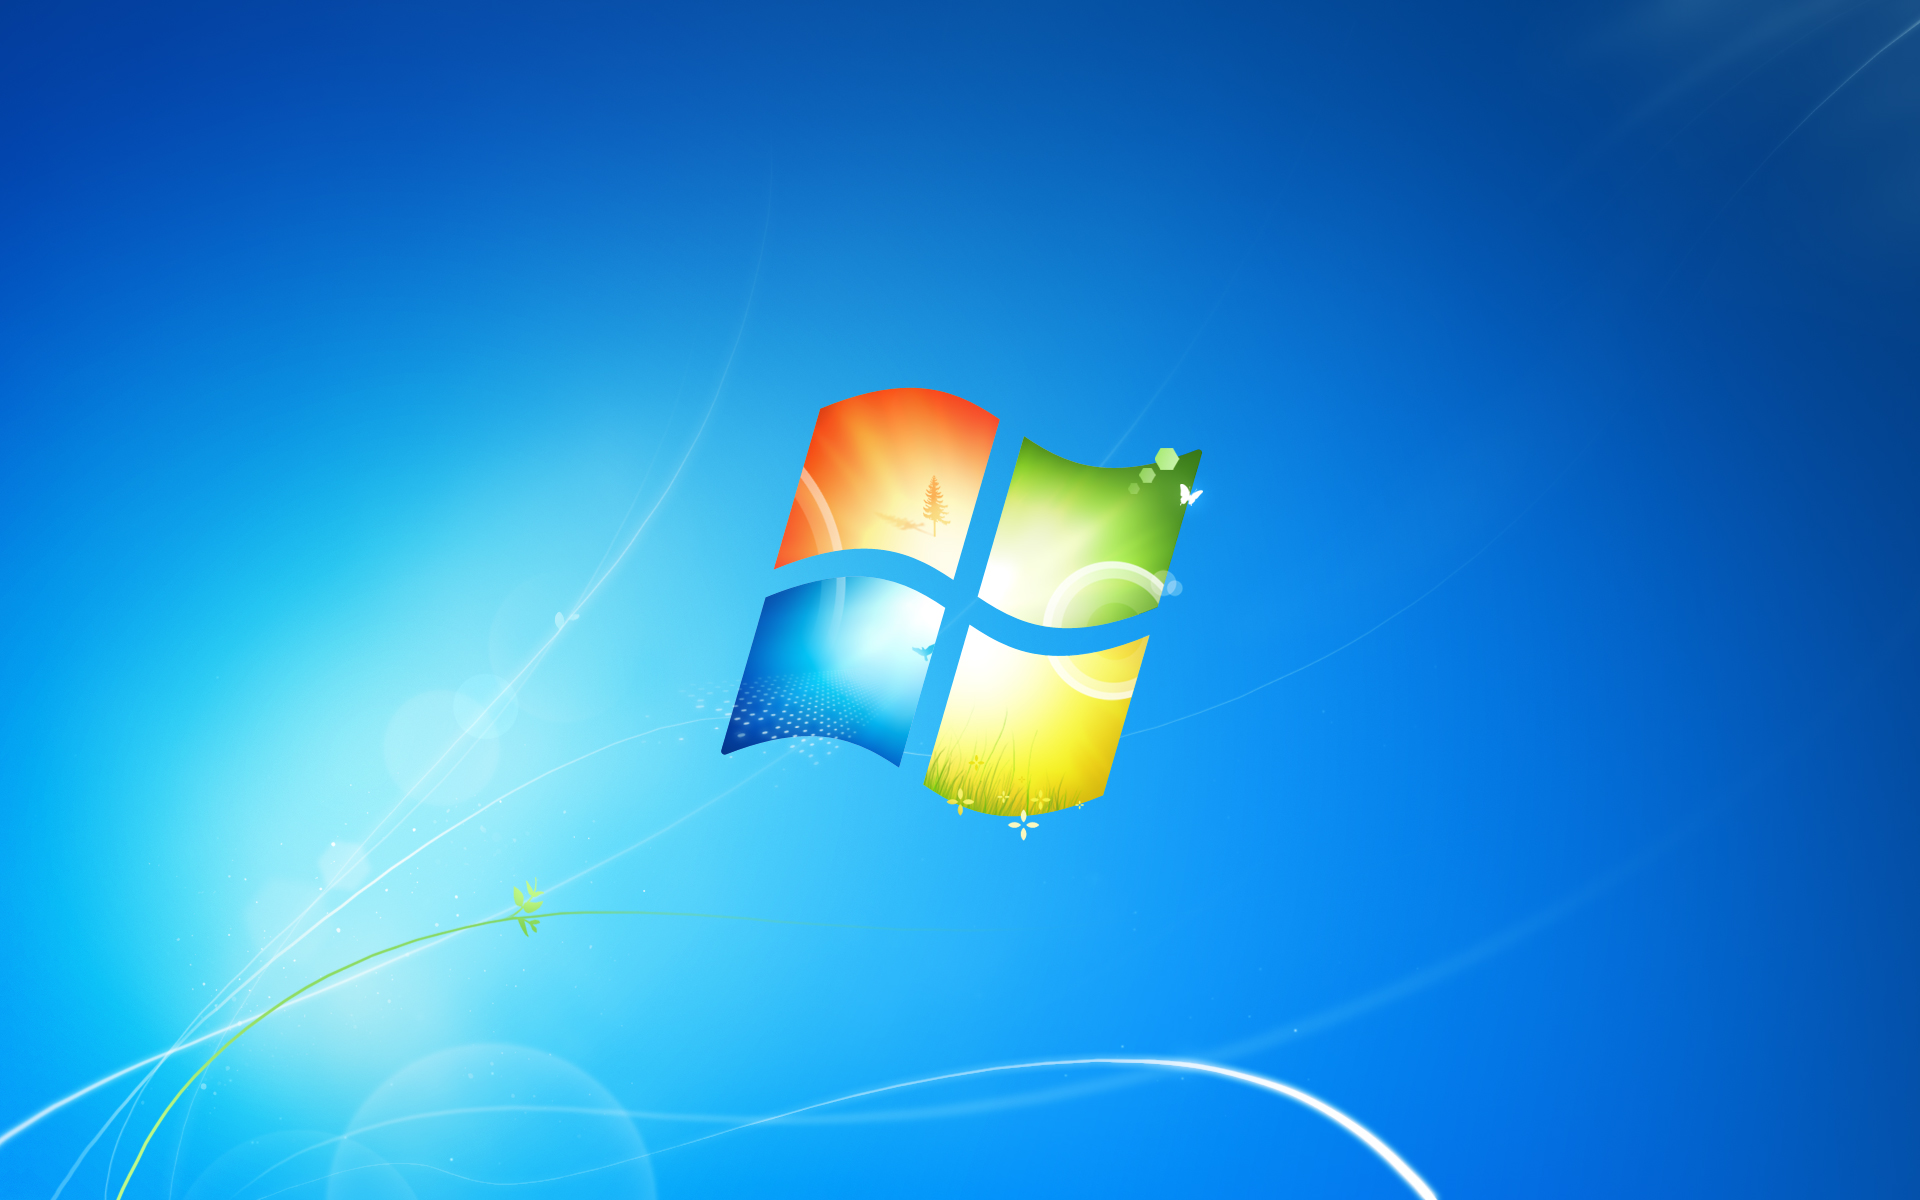 Windows 7 Desktop Background   Change